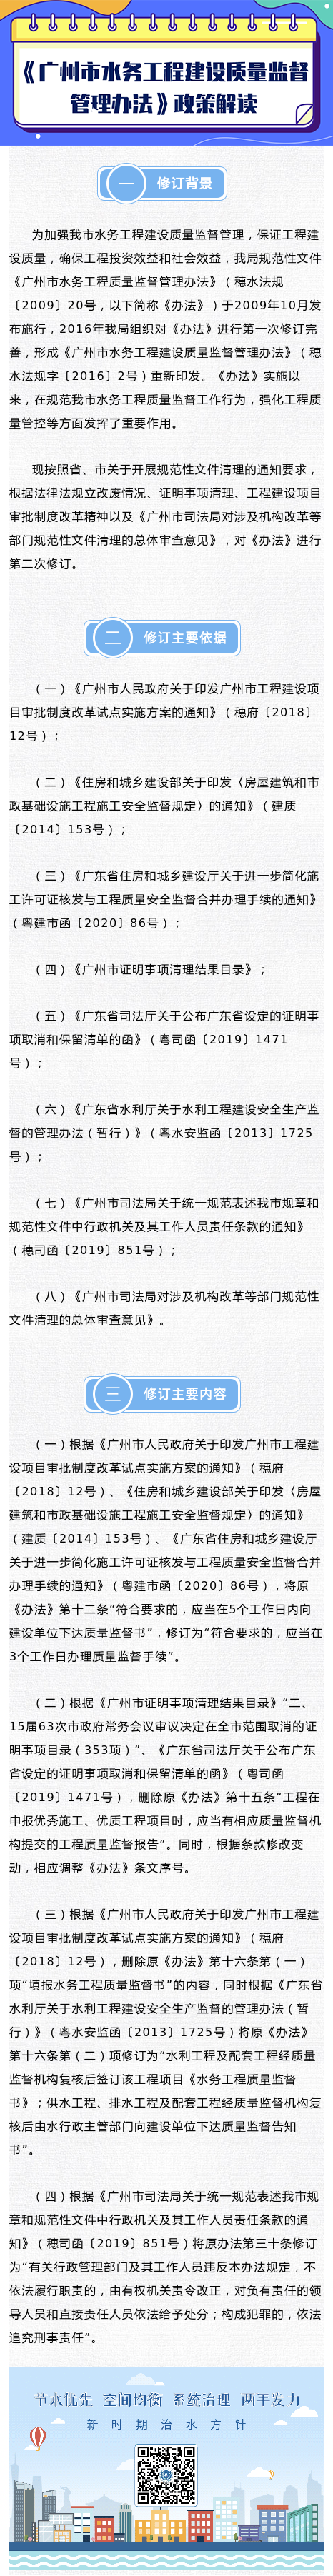 《广州市水务工程建设质量监督管理办法》政策解读.png